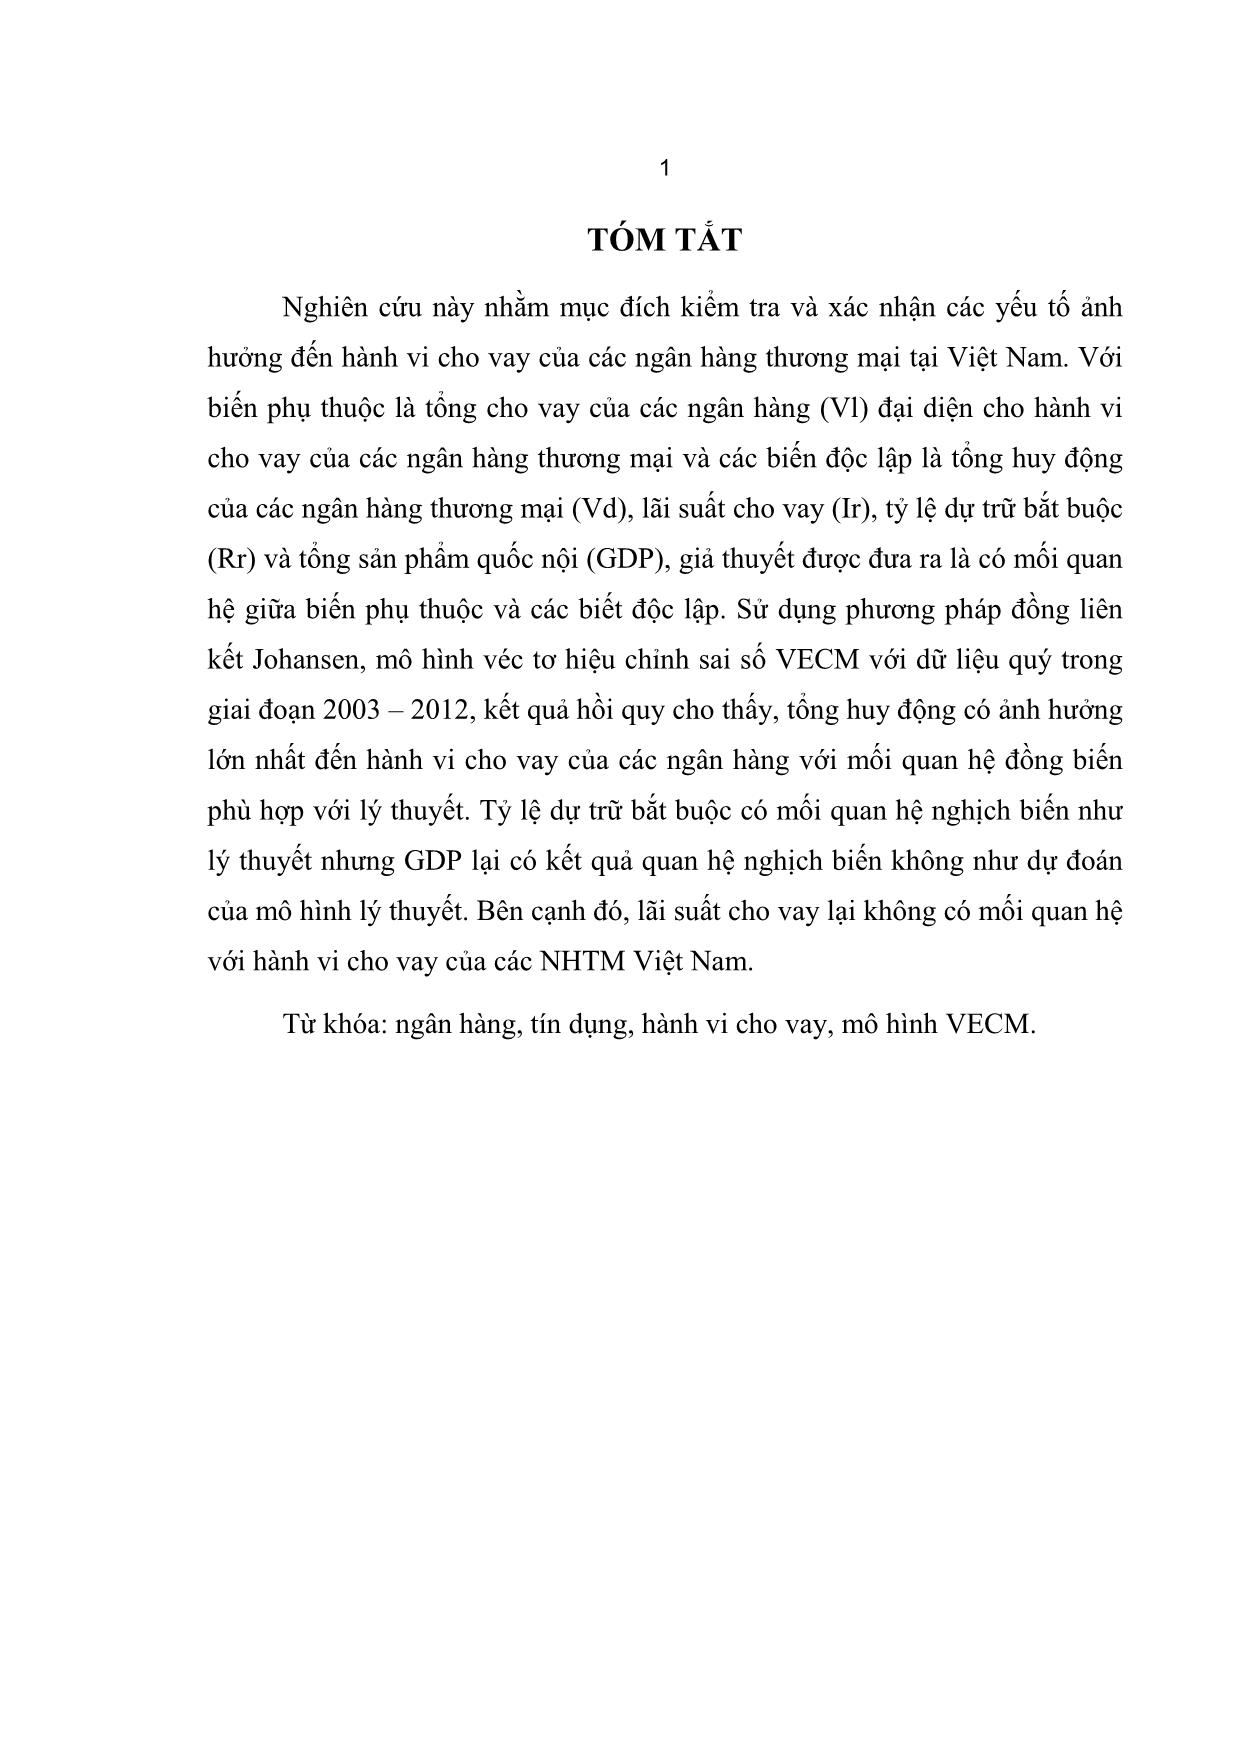 Luận văn Các yếu tố tác động đến hành vi cho vay của các ngân hàng thương mại Việt Nam trang 10